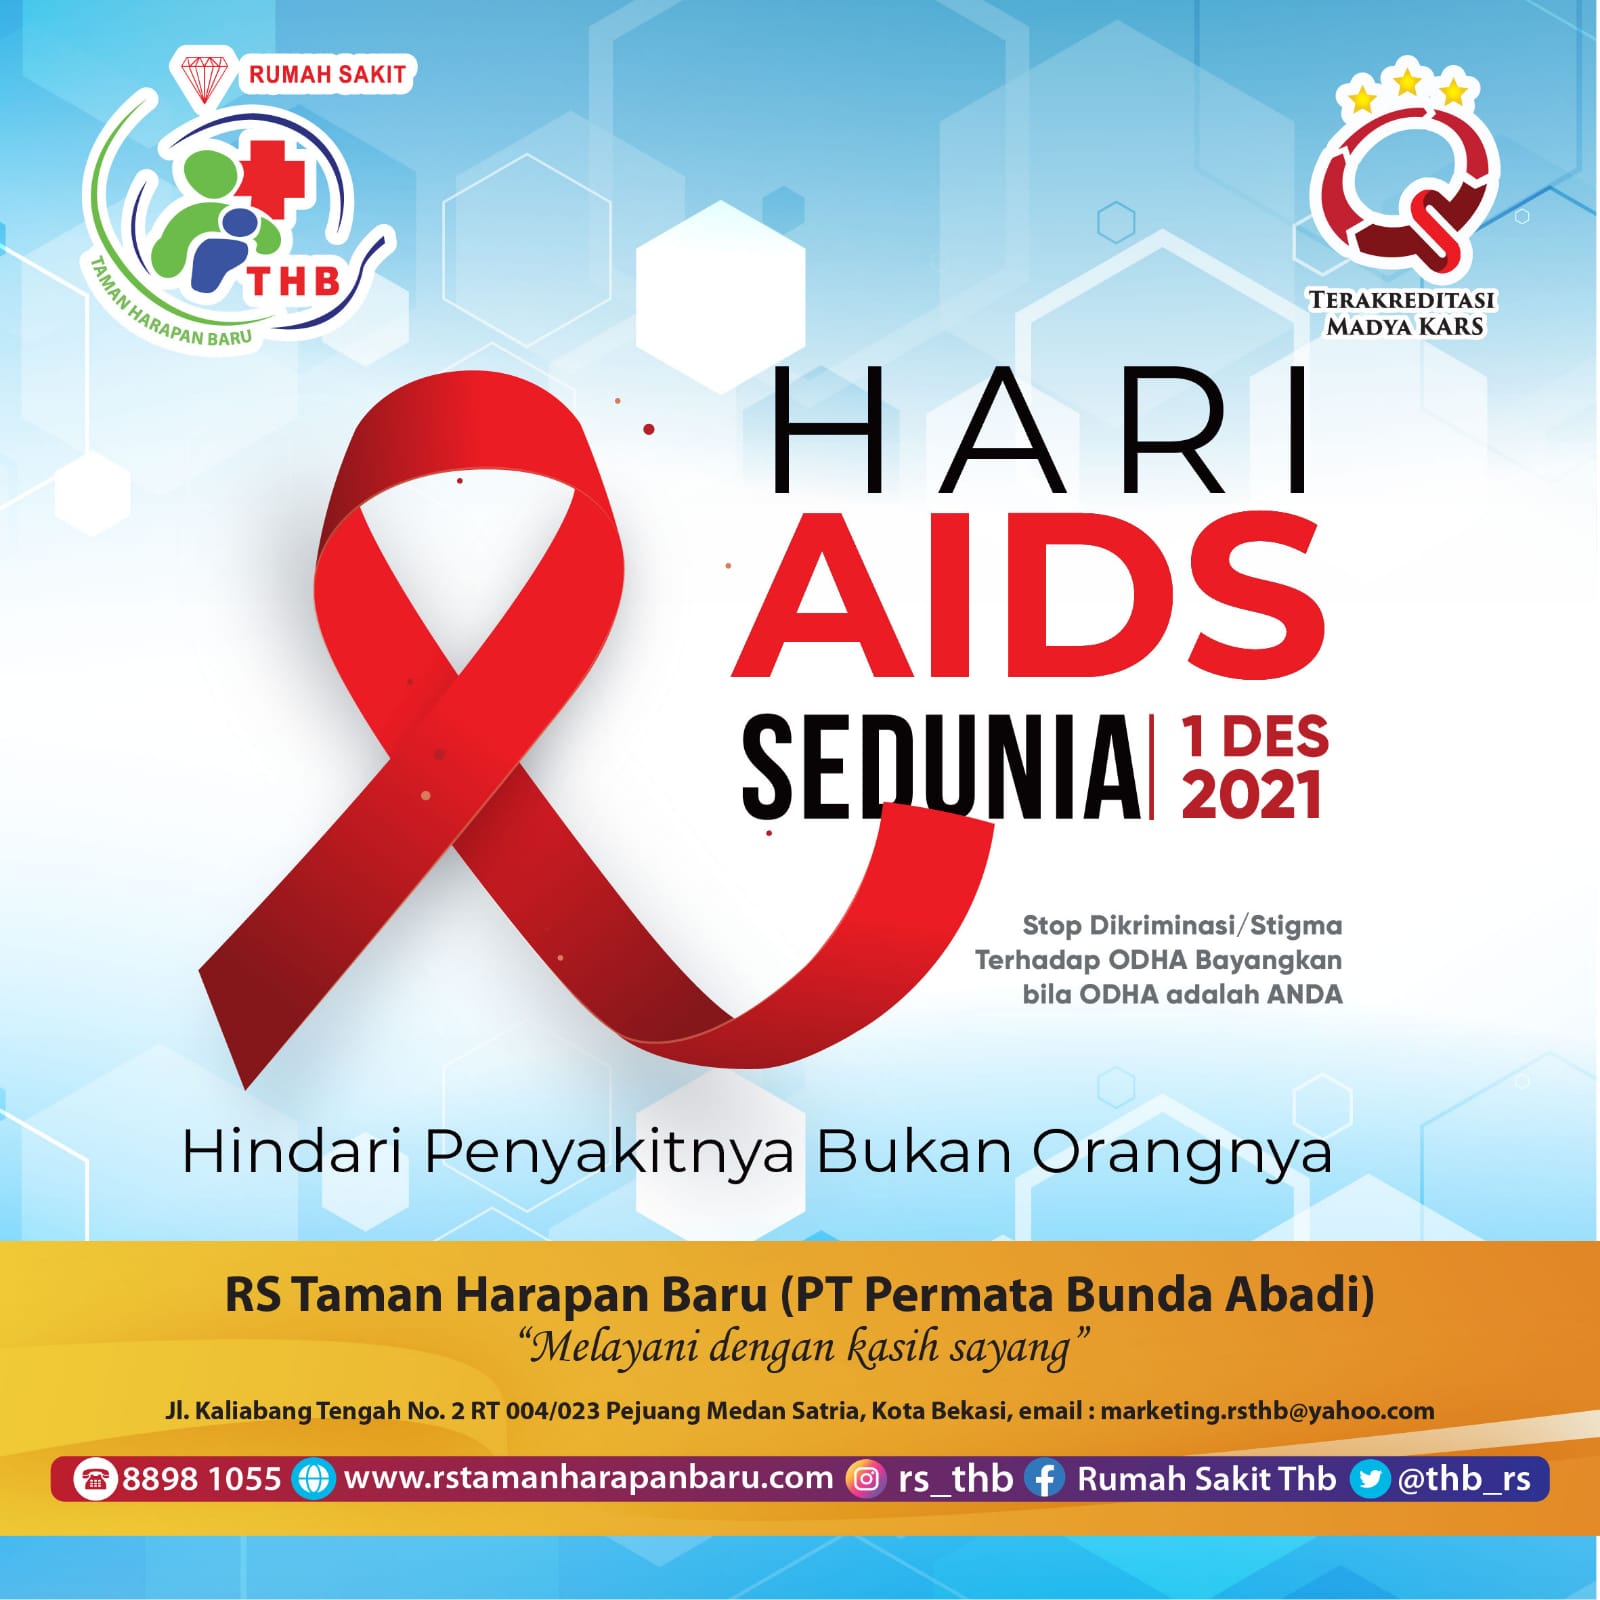 RS Taman Harapan Baru mengucapkan " HARI AIDS SEDUNIA 01 DESEMBER 2021 "